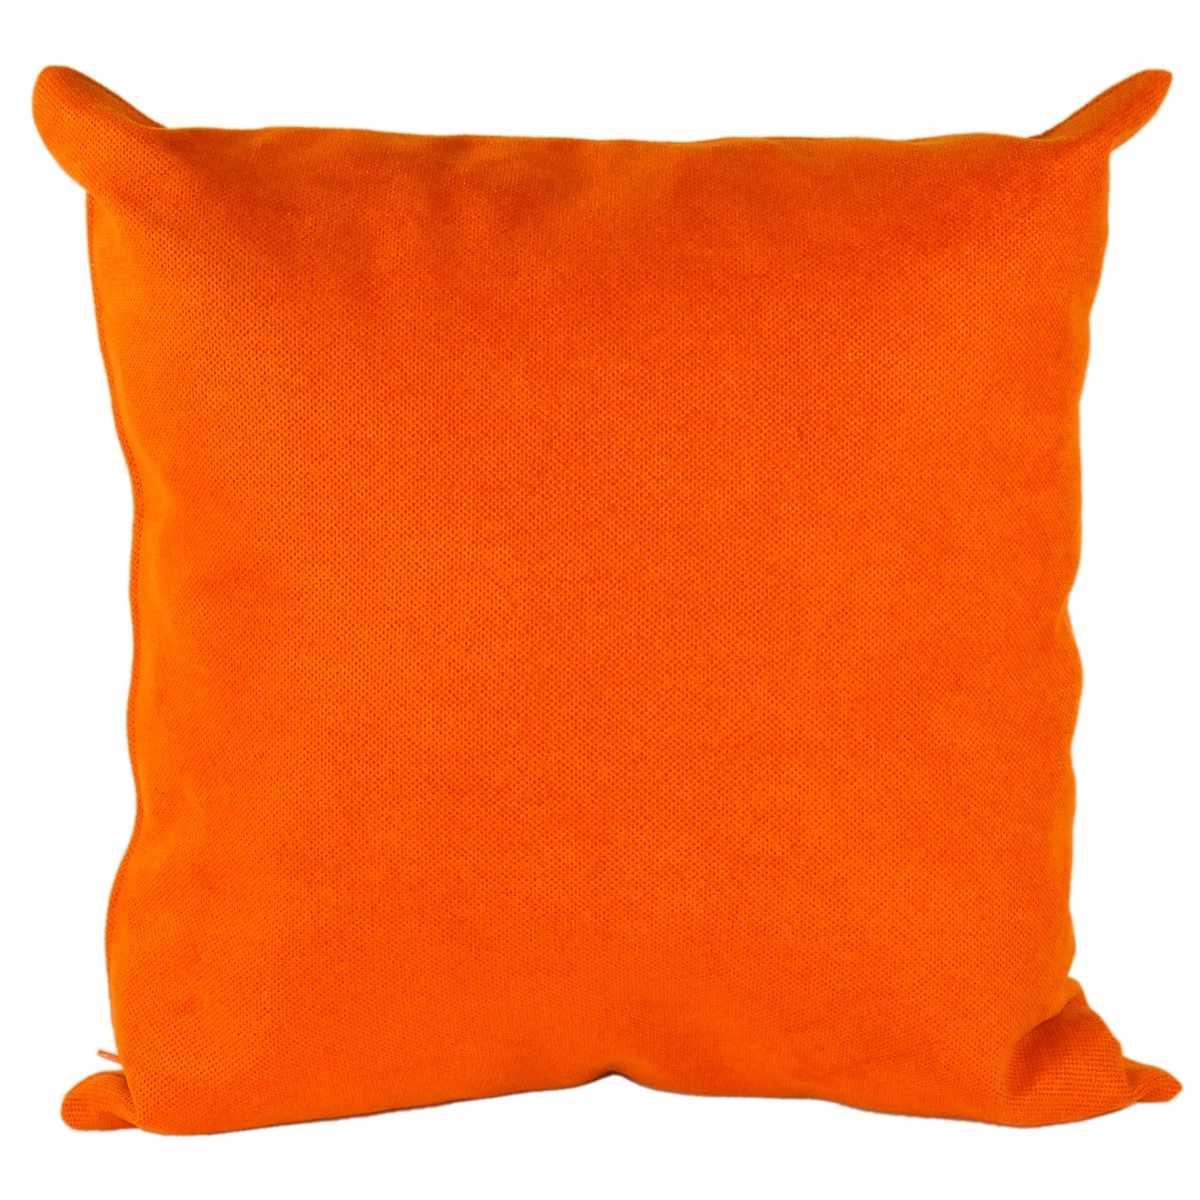 Cuscino Tessuto Arredo Letizia Arancione cm.41x41x18